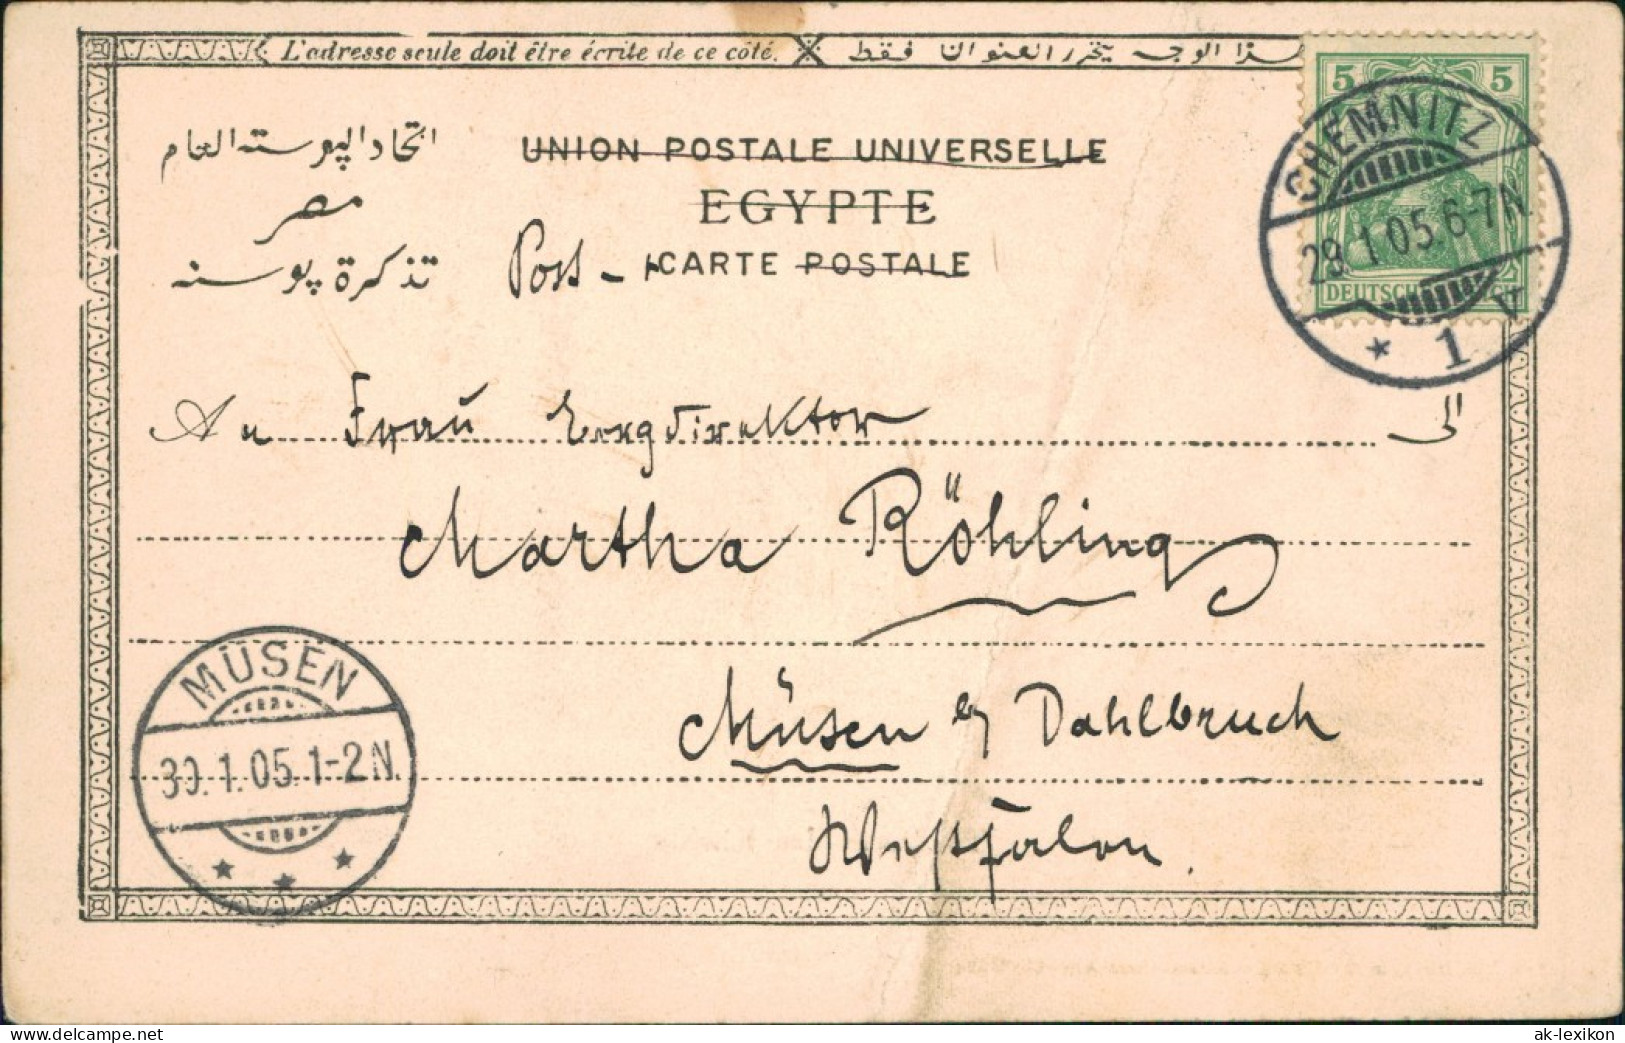 Kairo القاهرة Tombeaux Des Khalifs 1905 - Le Caire